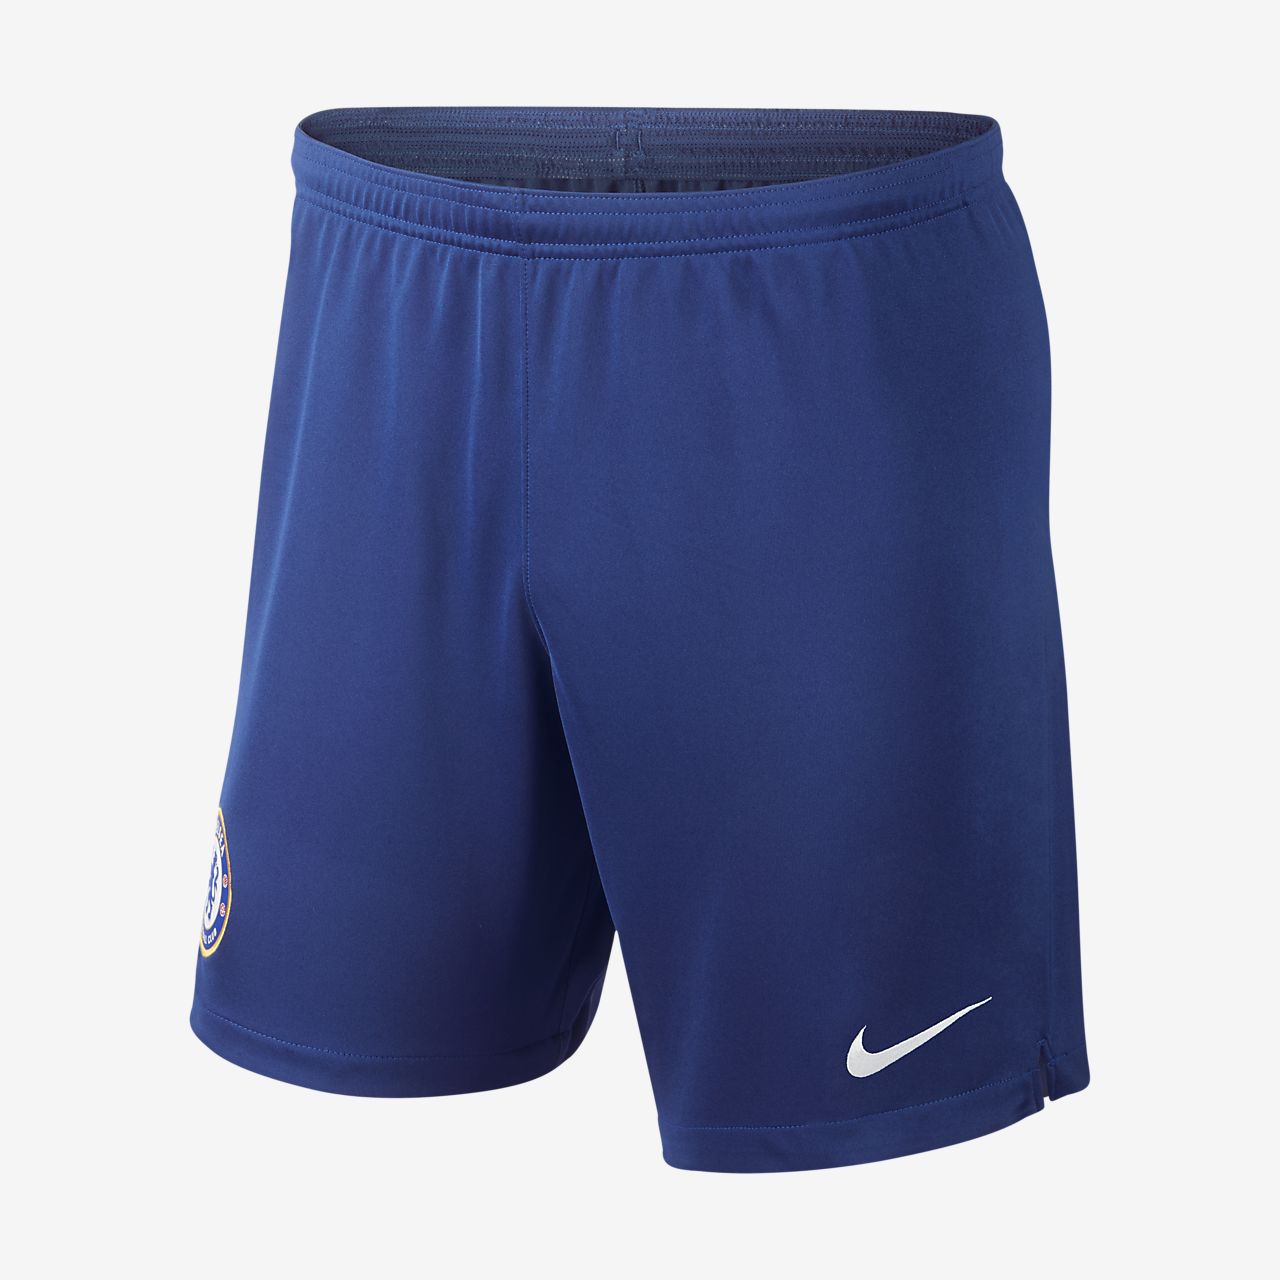 Chelsea FC 2019/20 Stadium Home/Away Men's Football Shorts. Nike HR